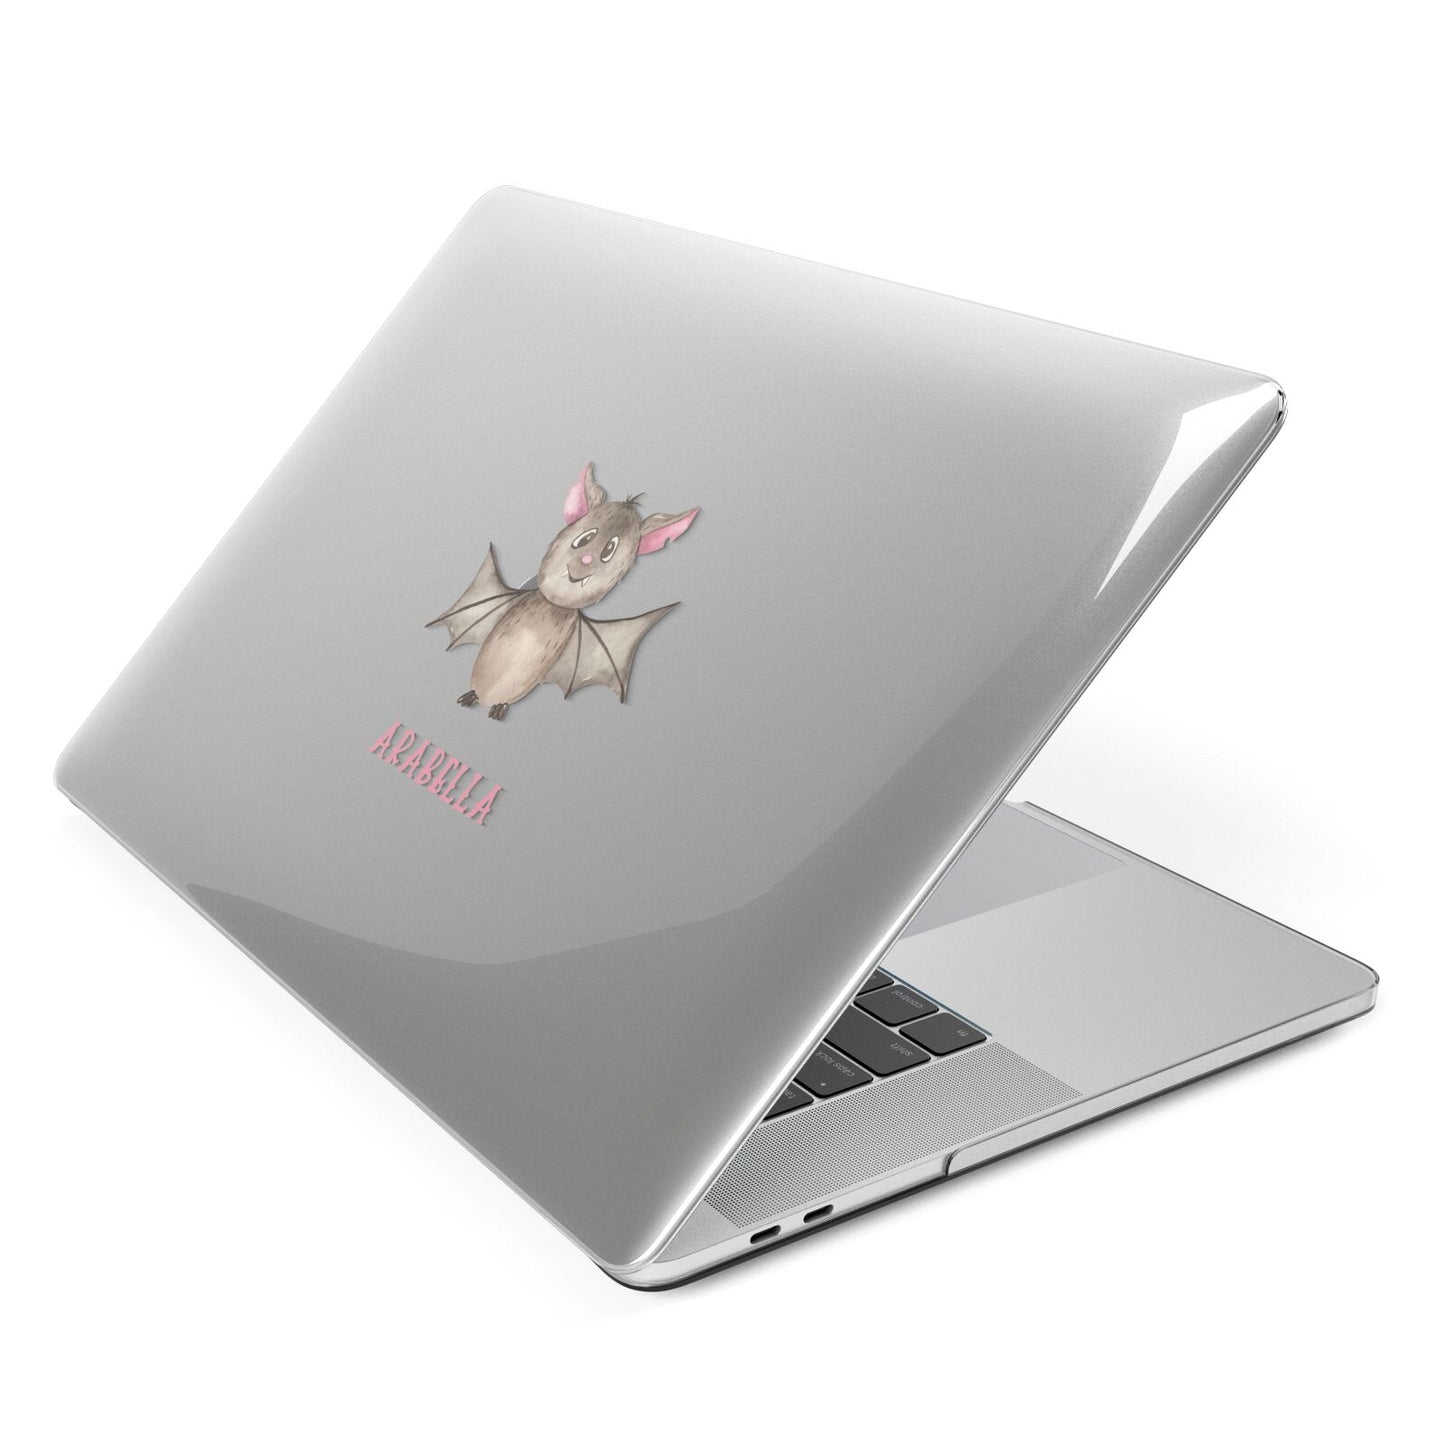 Bat Personalised Apple MacBook Case Side View